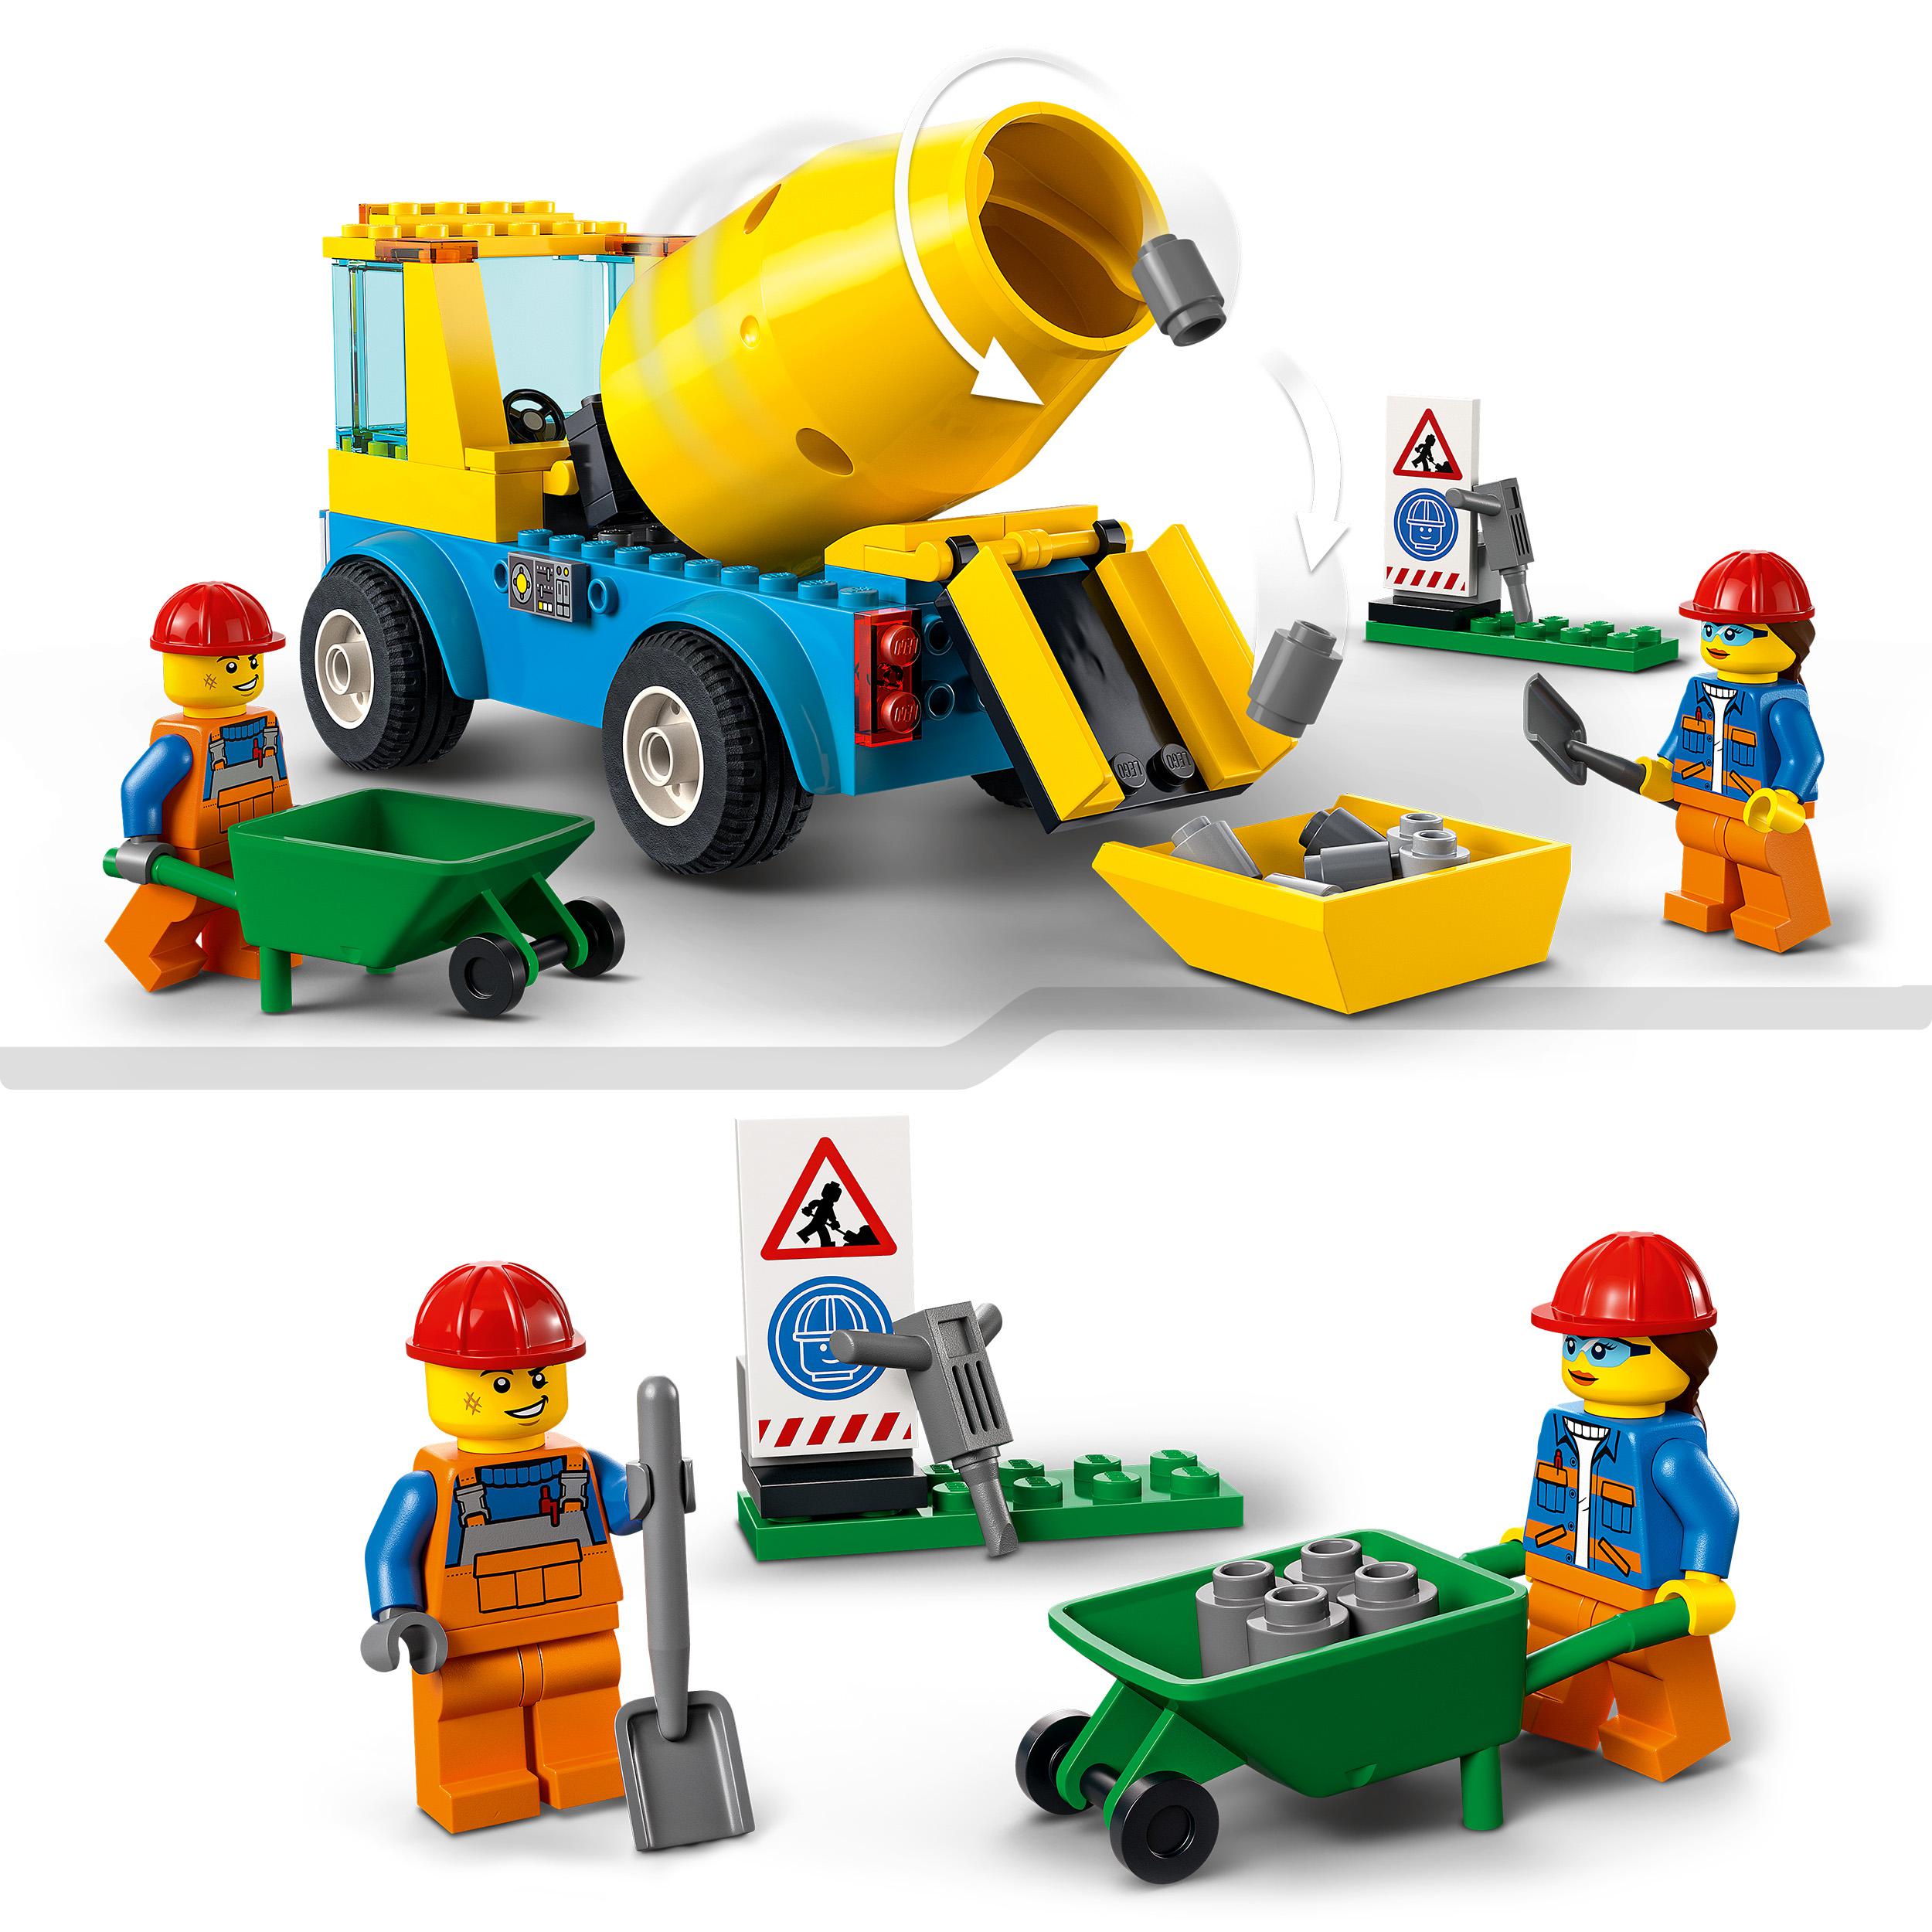 Lego city great vehicles autobetoniera, camion giocattolo, giochi per bambini dai 4 anni in su con veicoli da cantiere, 60325 - LEGO CITY, Lego